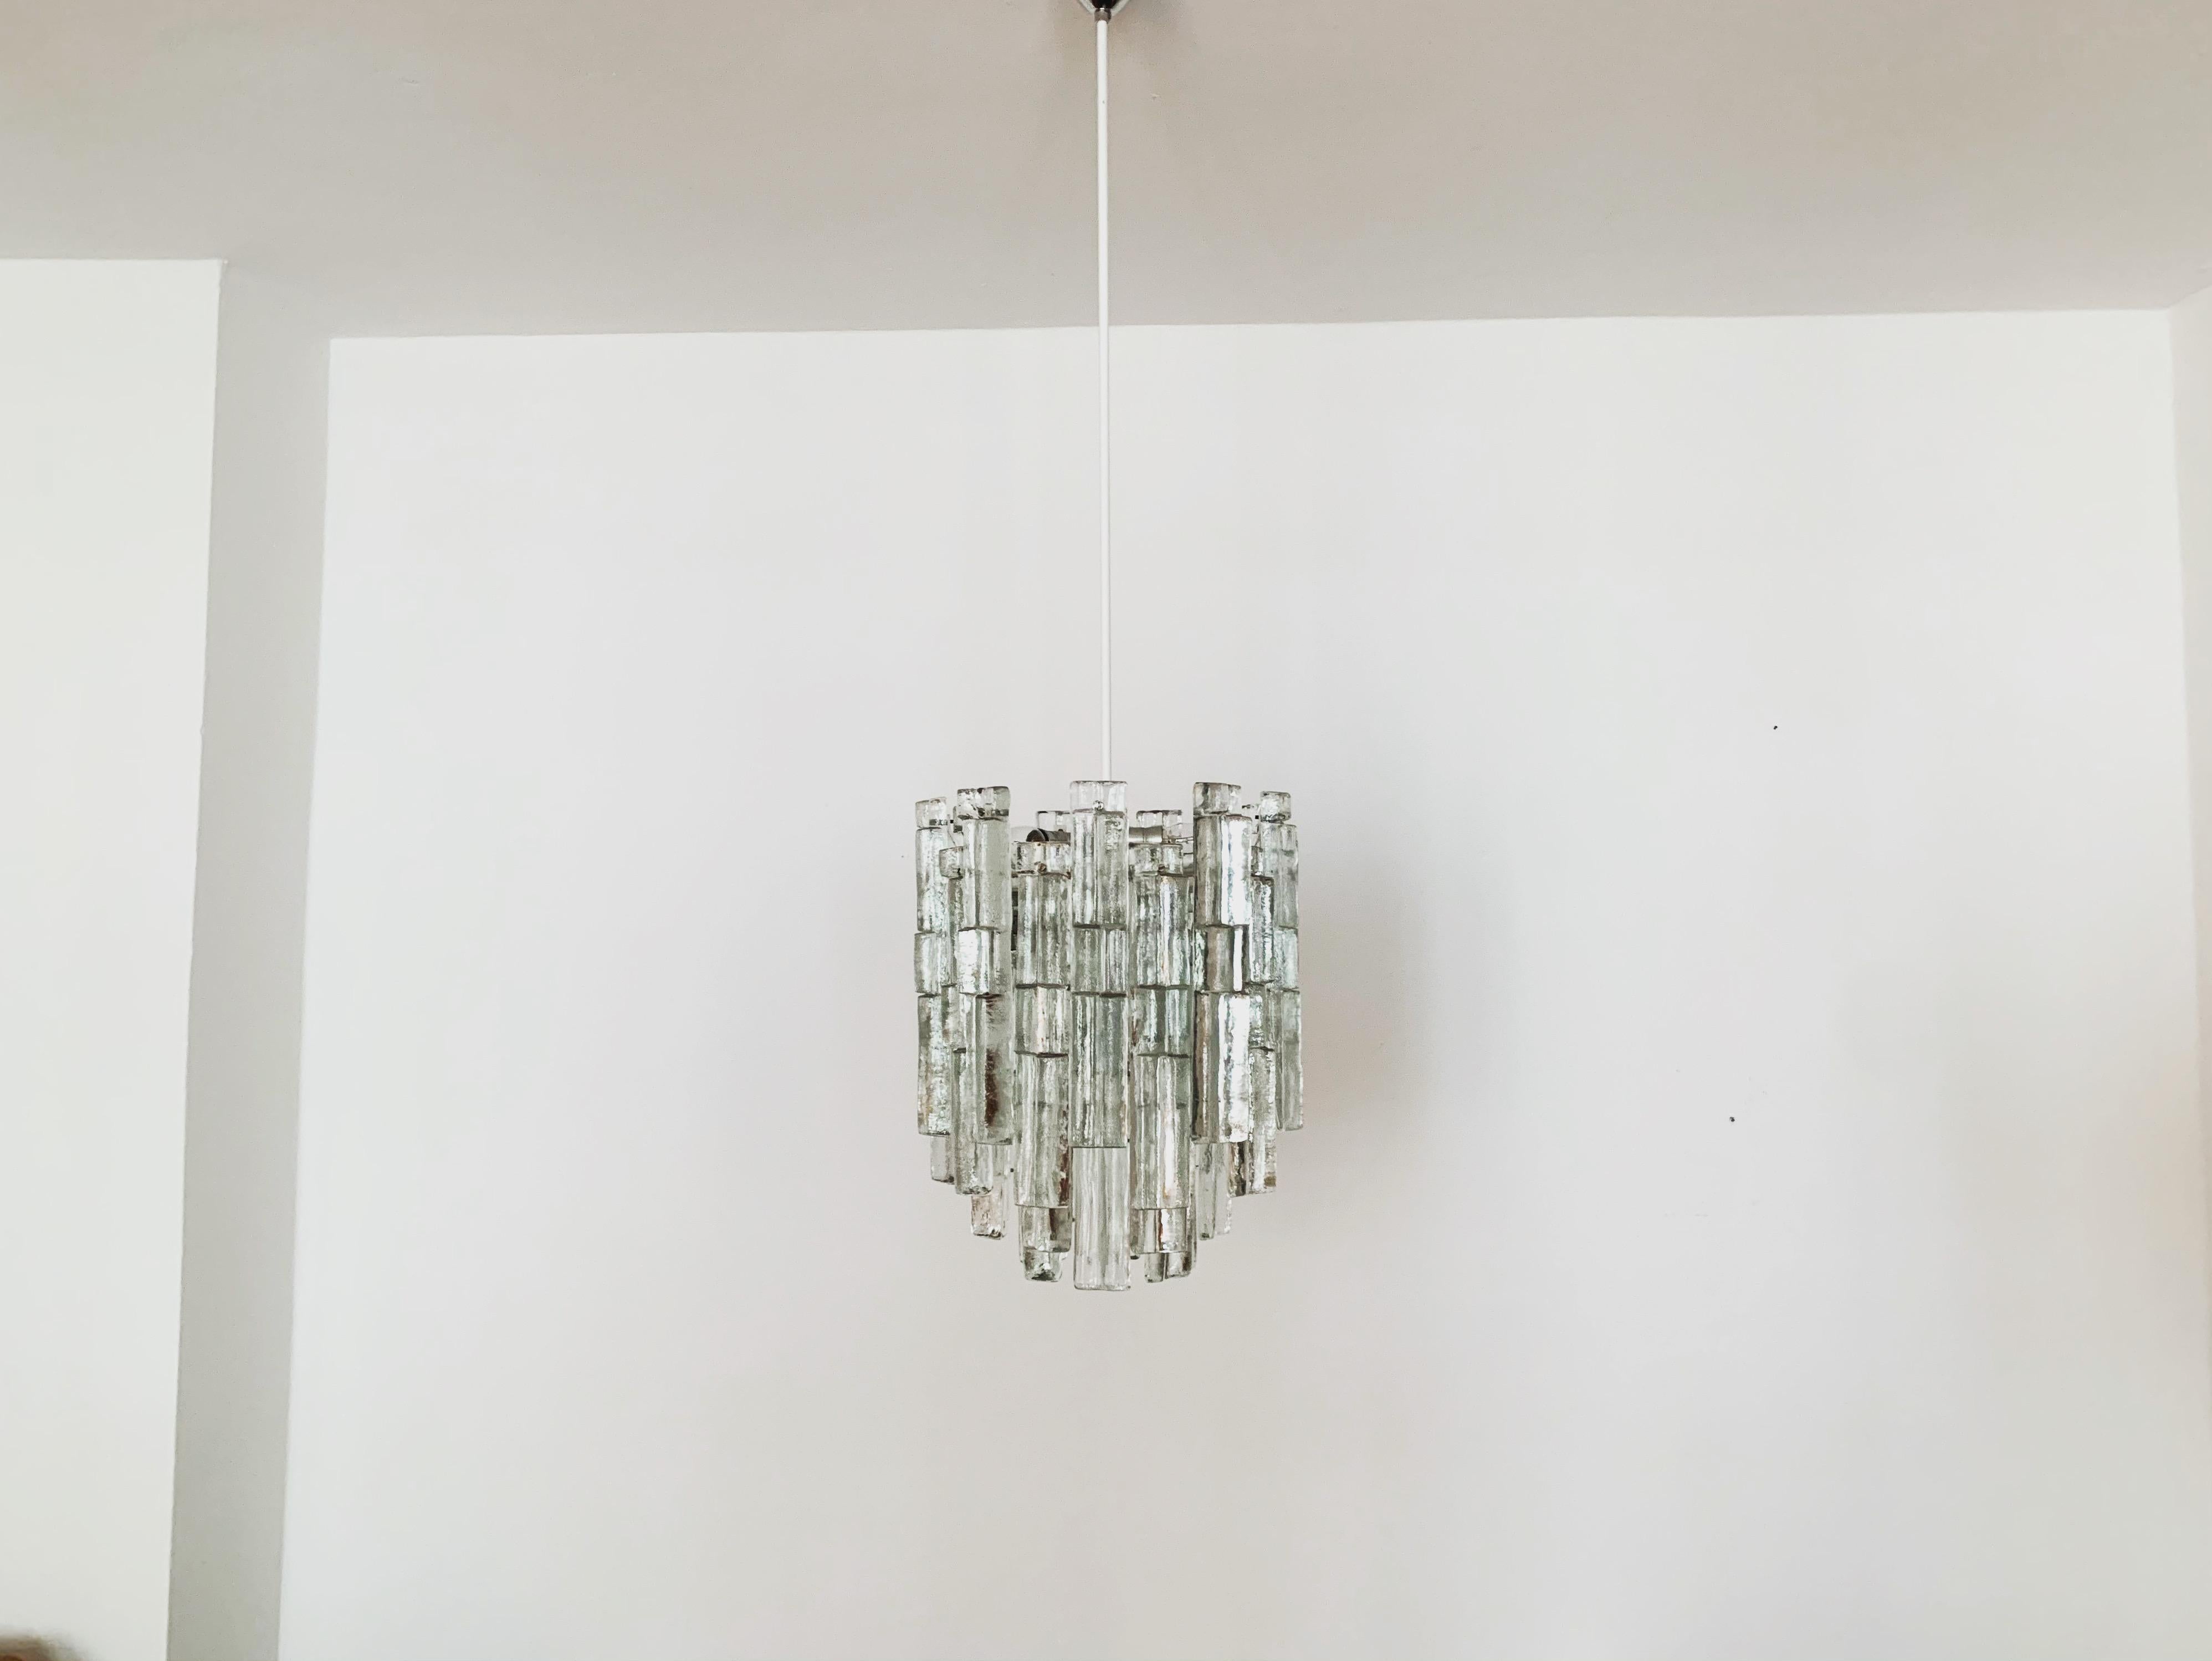 Lampe aus Eisglas von J.T. Kalmar aus den 1960er Jahren.
Die 30 Glaselemente verbreiten ein sehr edles Licht.
Sehr hochwertig verarbeitet und ein echter Hingucker für jedes Zuhause.

Bedingung:

Sehr guter Vintage-Zustand mit leichten